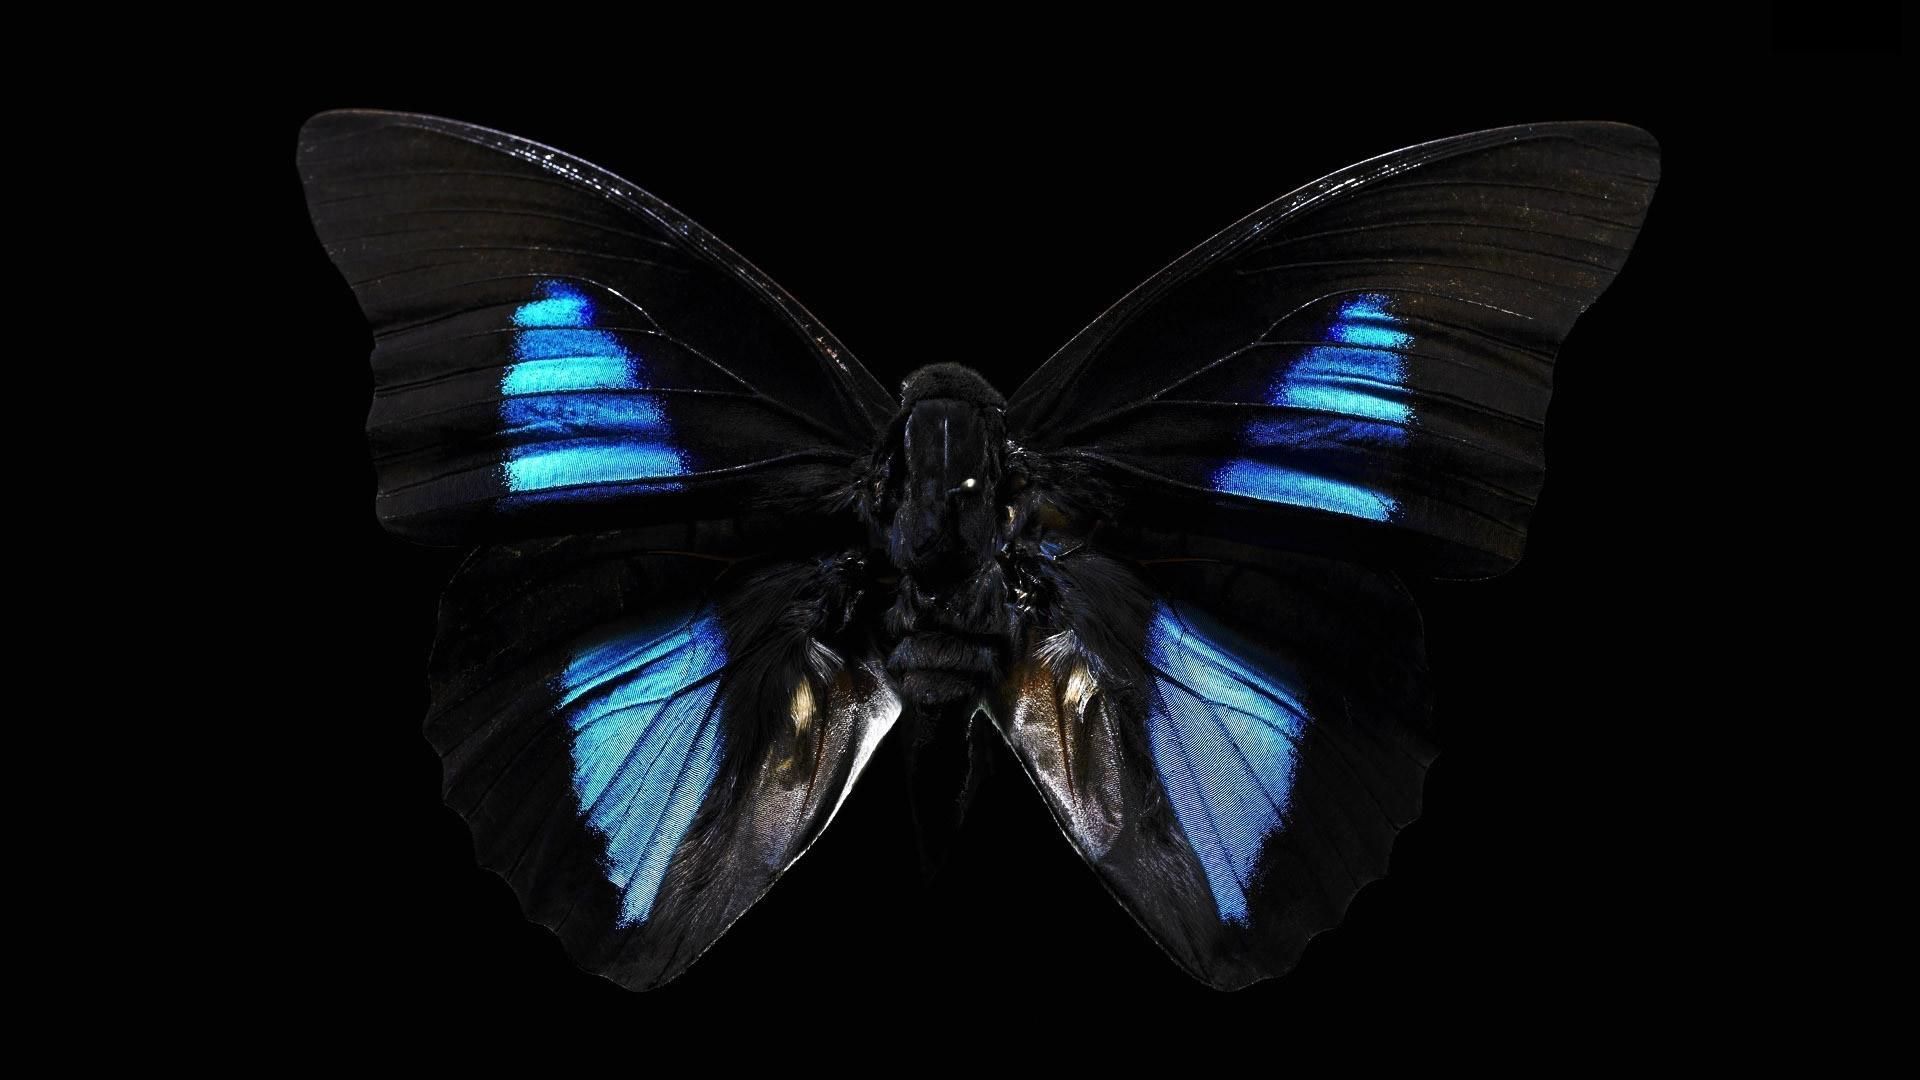  والپیپر فوق العاده زیبا از پروانه سیاه با بال های آبی 